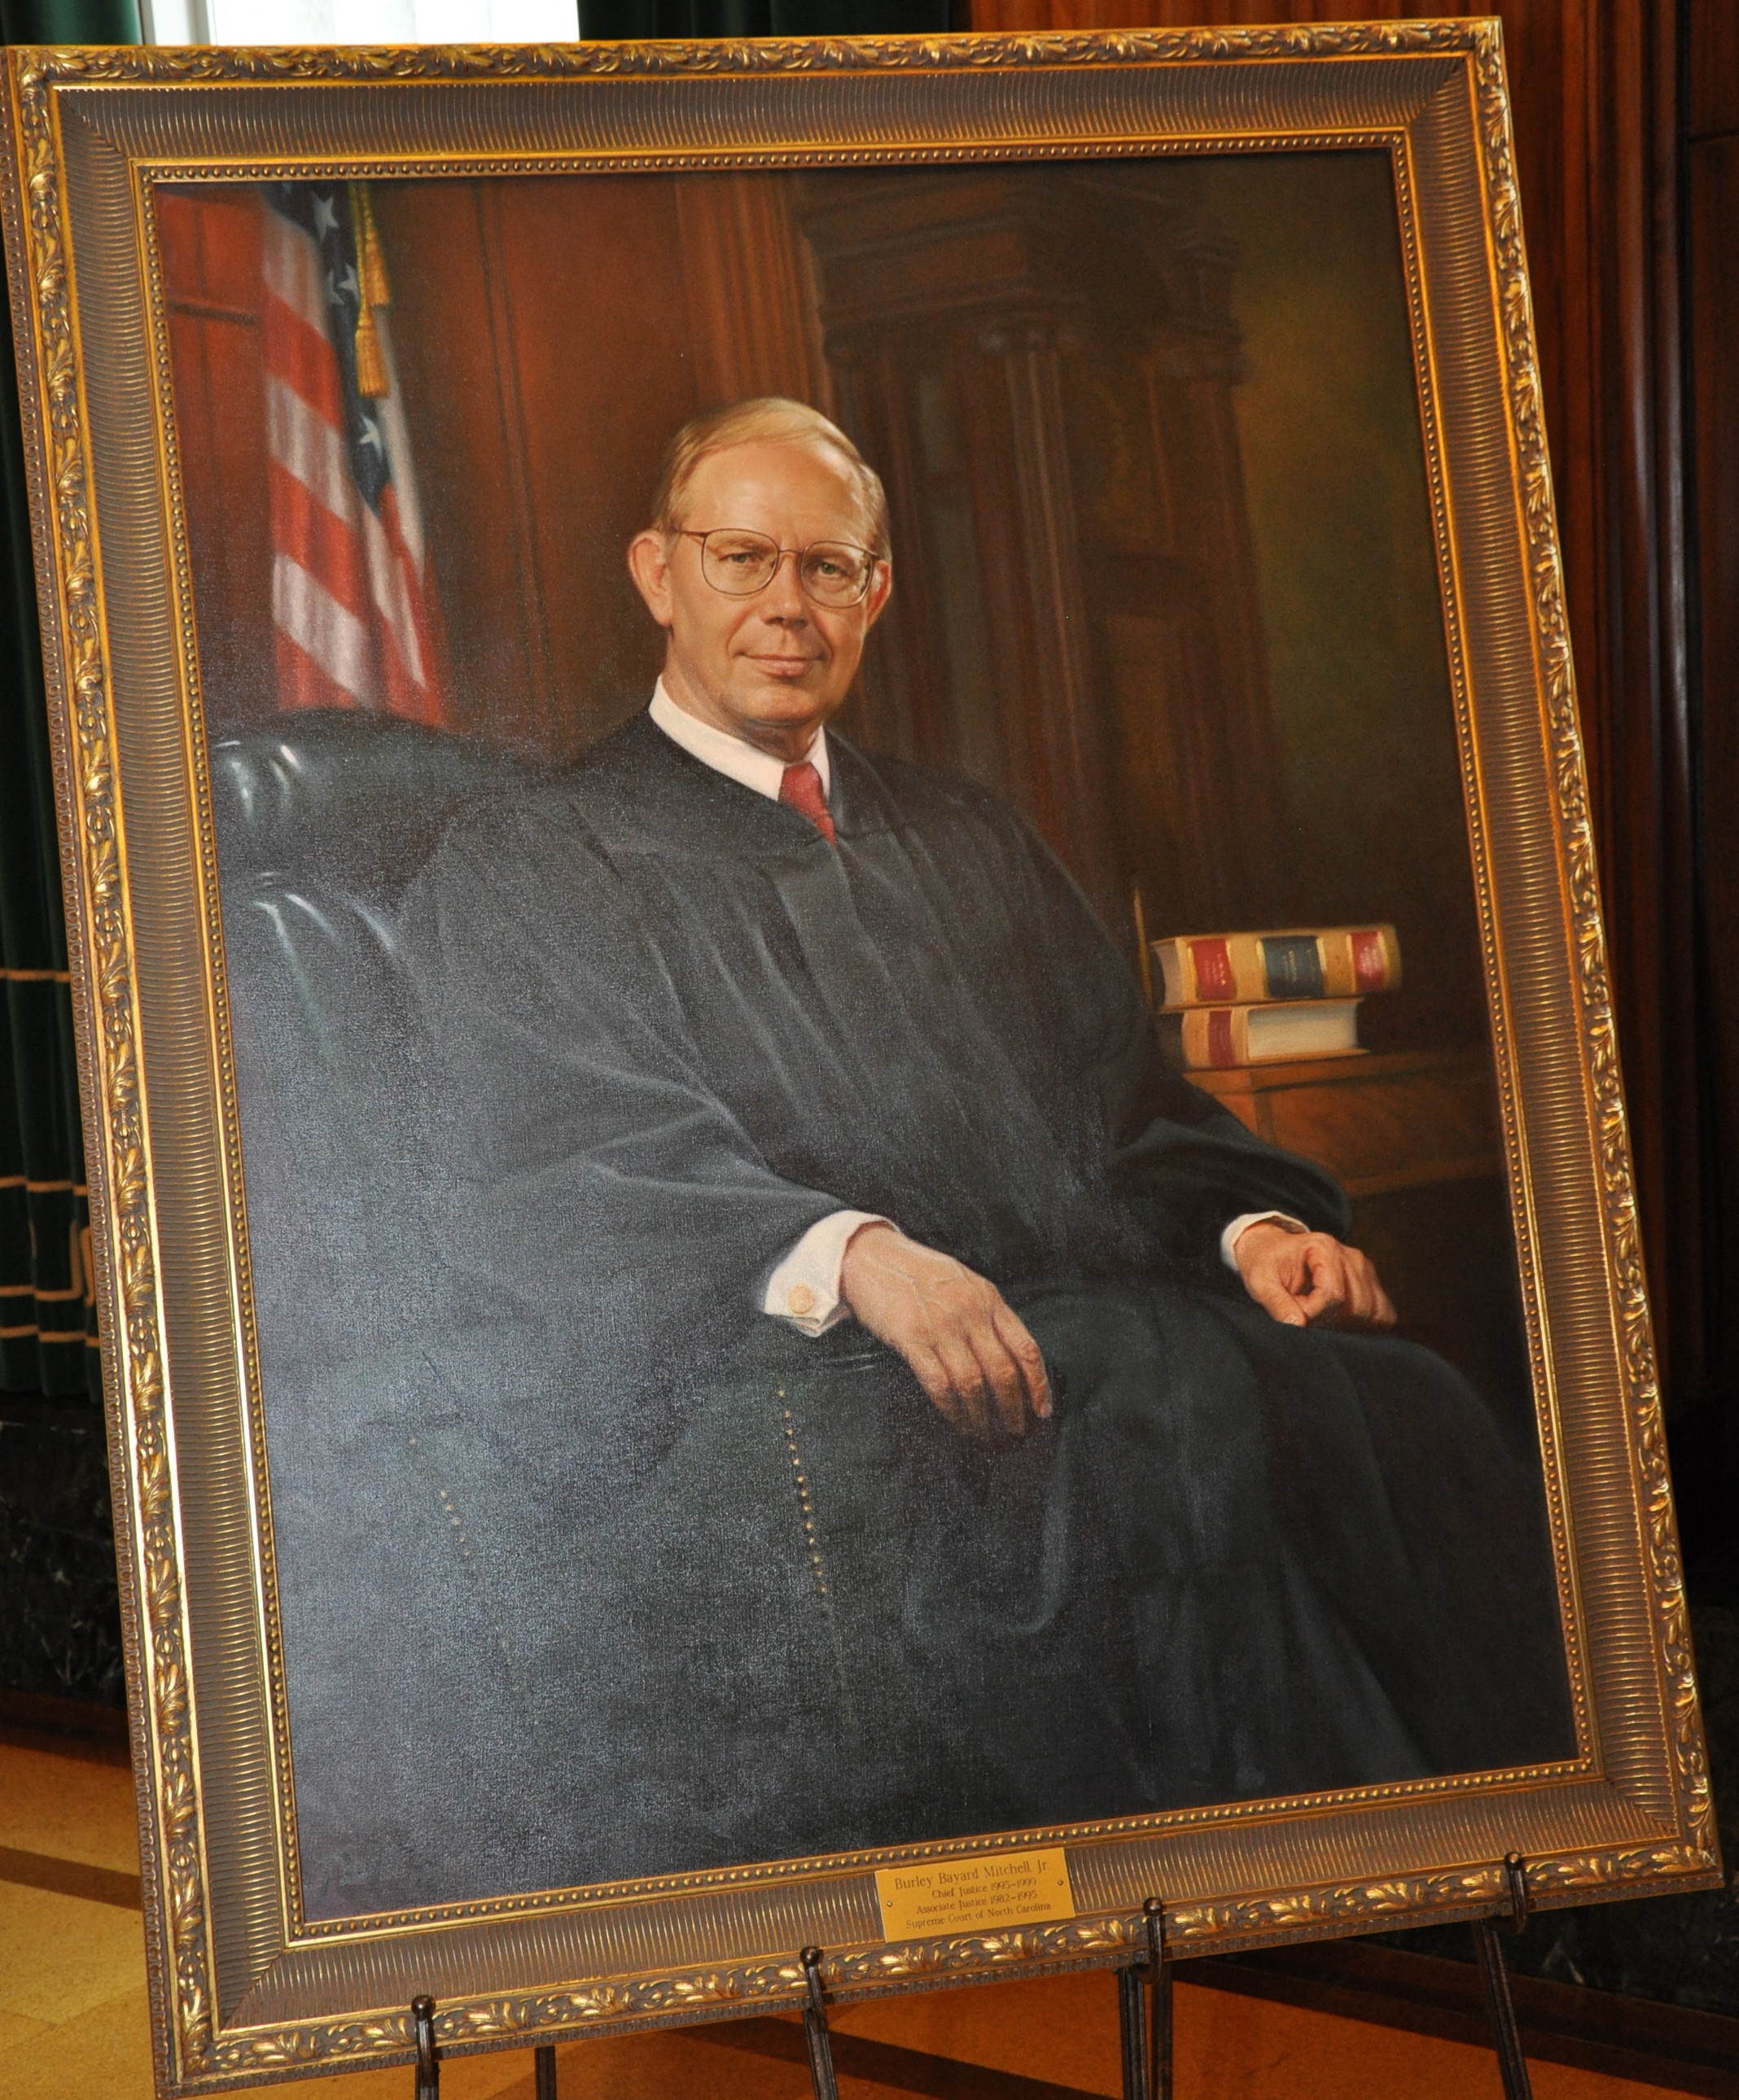 Chief Justice Mitchell's portrait